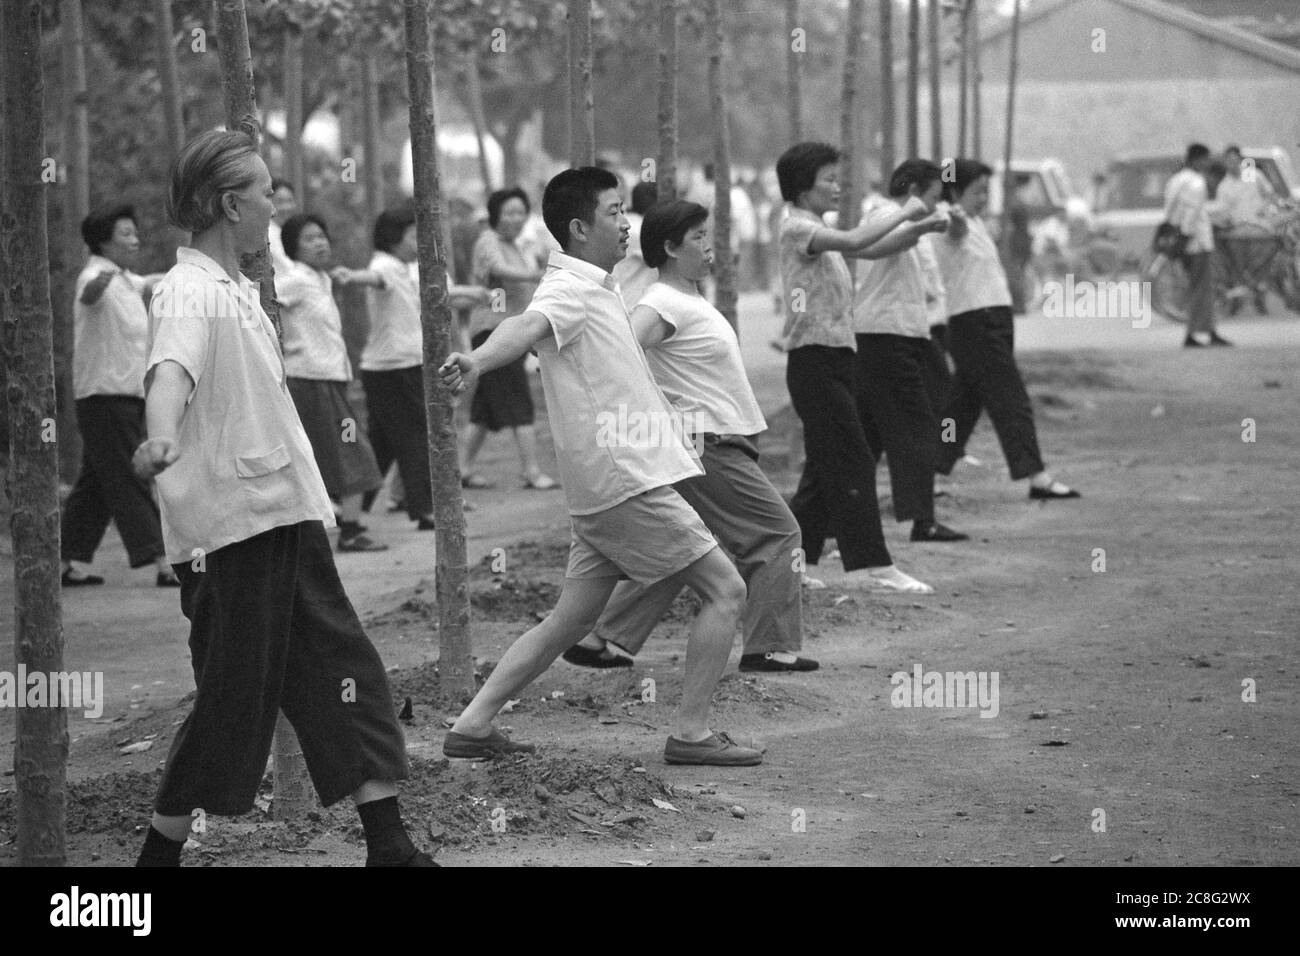 Peking, China. Juni 2020. Straßenszene, Chinesen machen Tai Chi Übungen in einem Park, 07/26/1972 Quelle: dpa/Alamy Live News Stockfoto